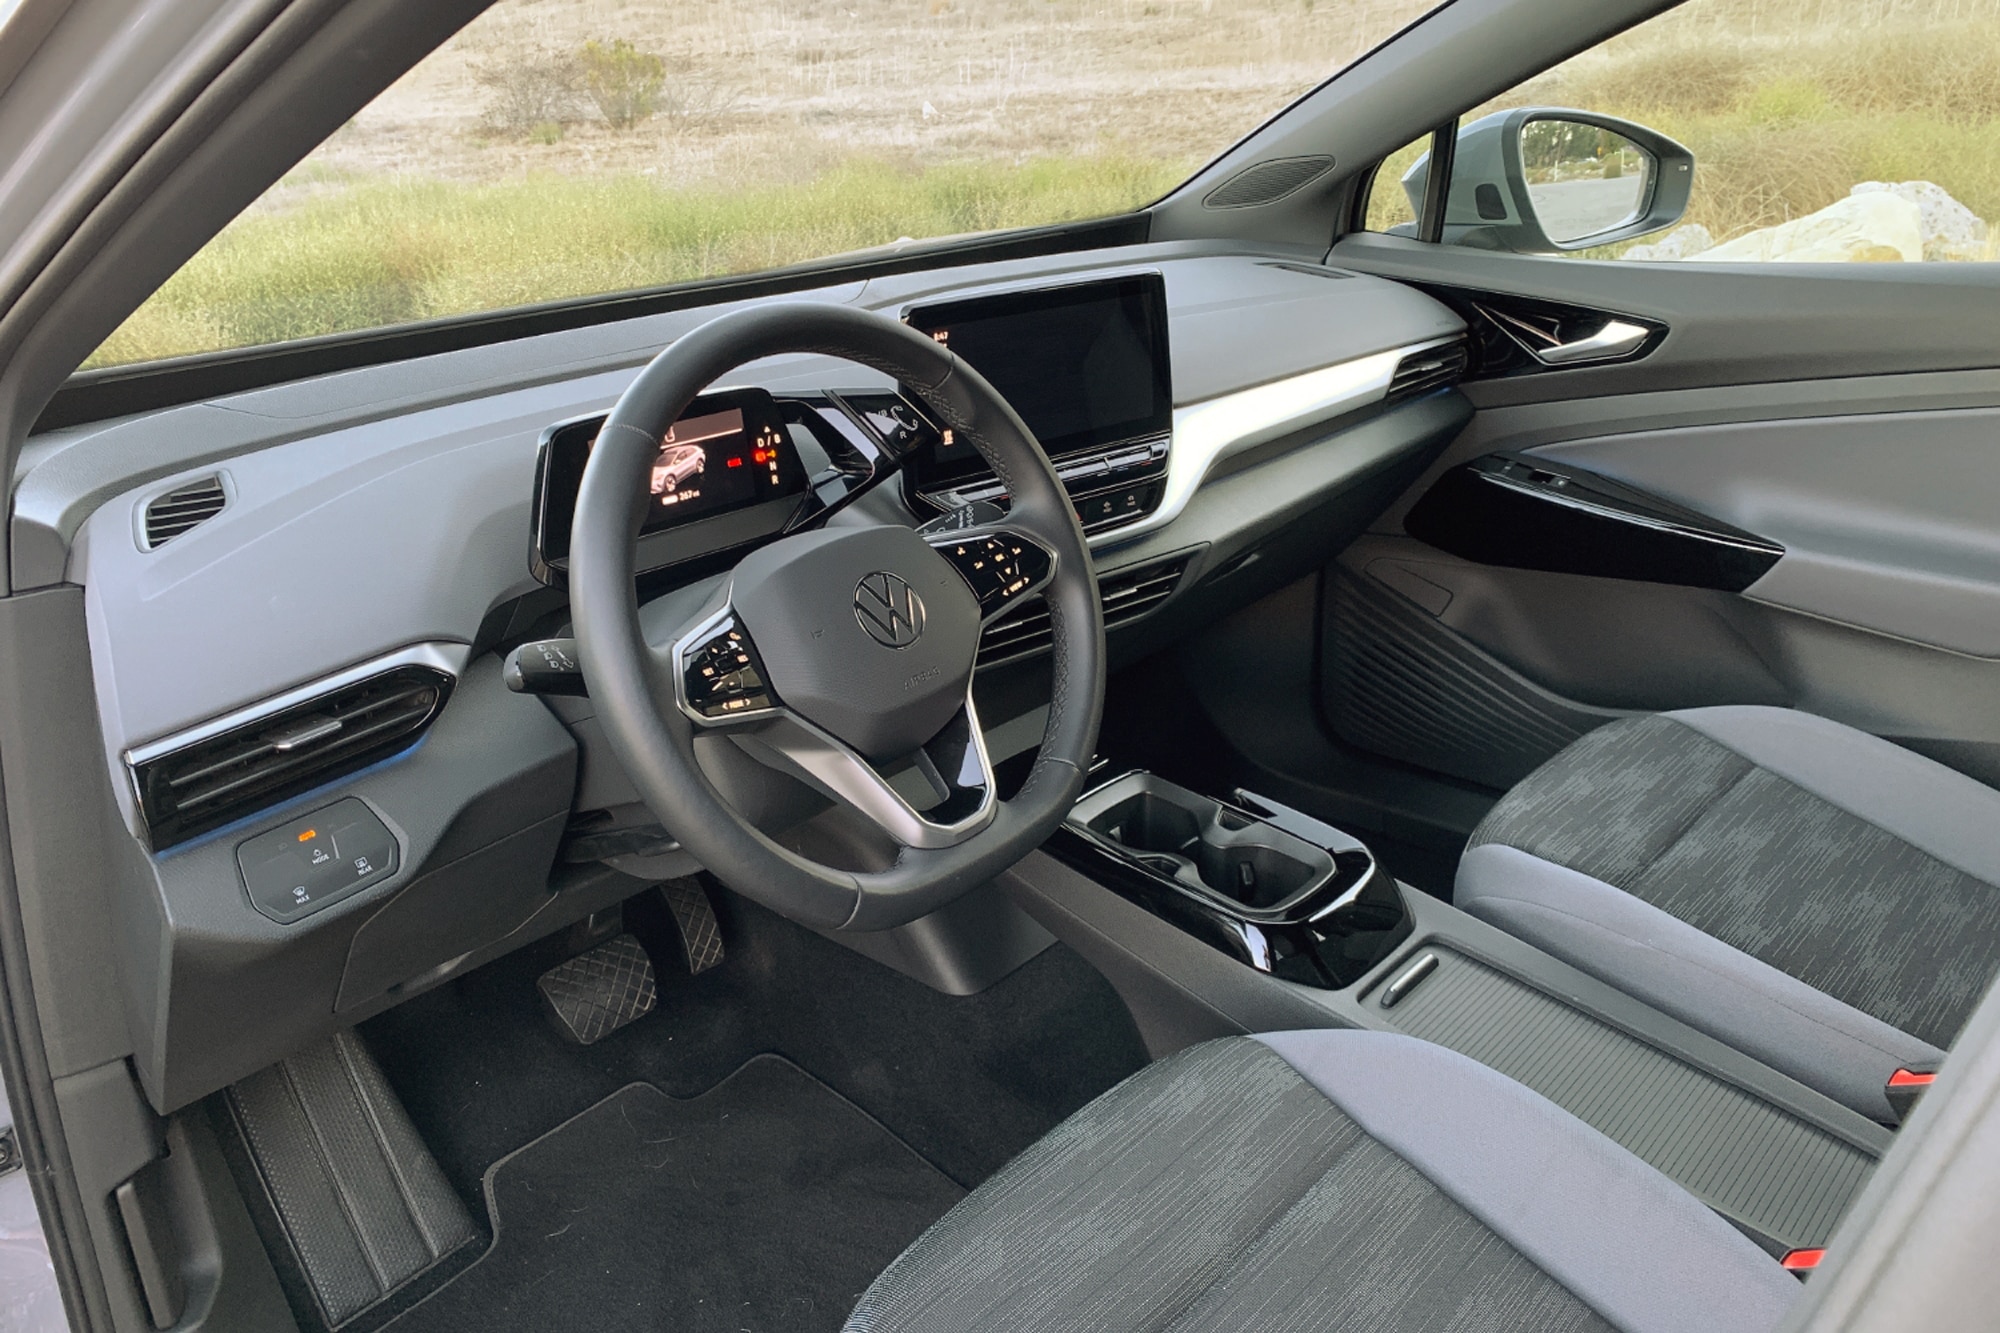 2021 Volkswagen ID.4 interior dashboard